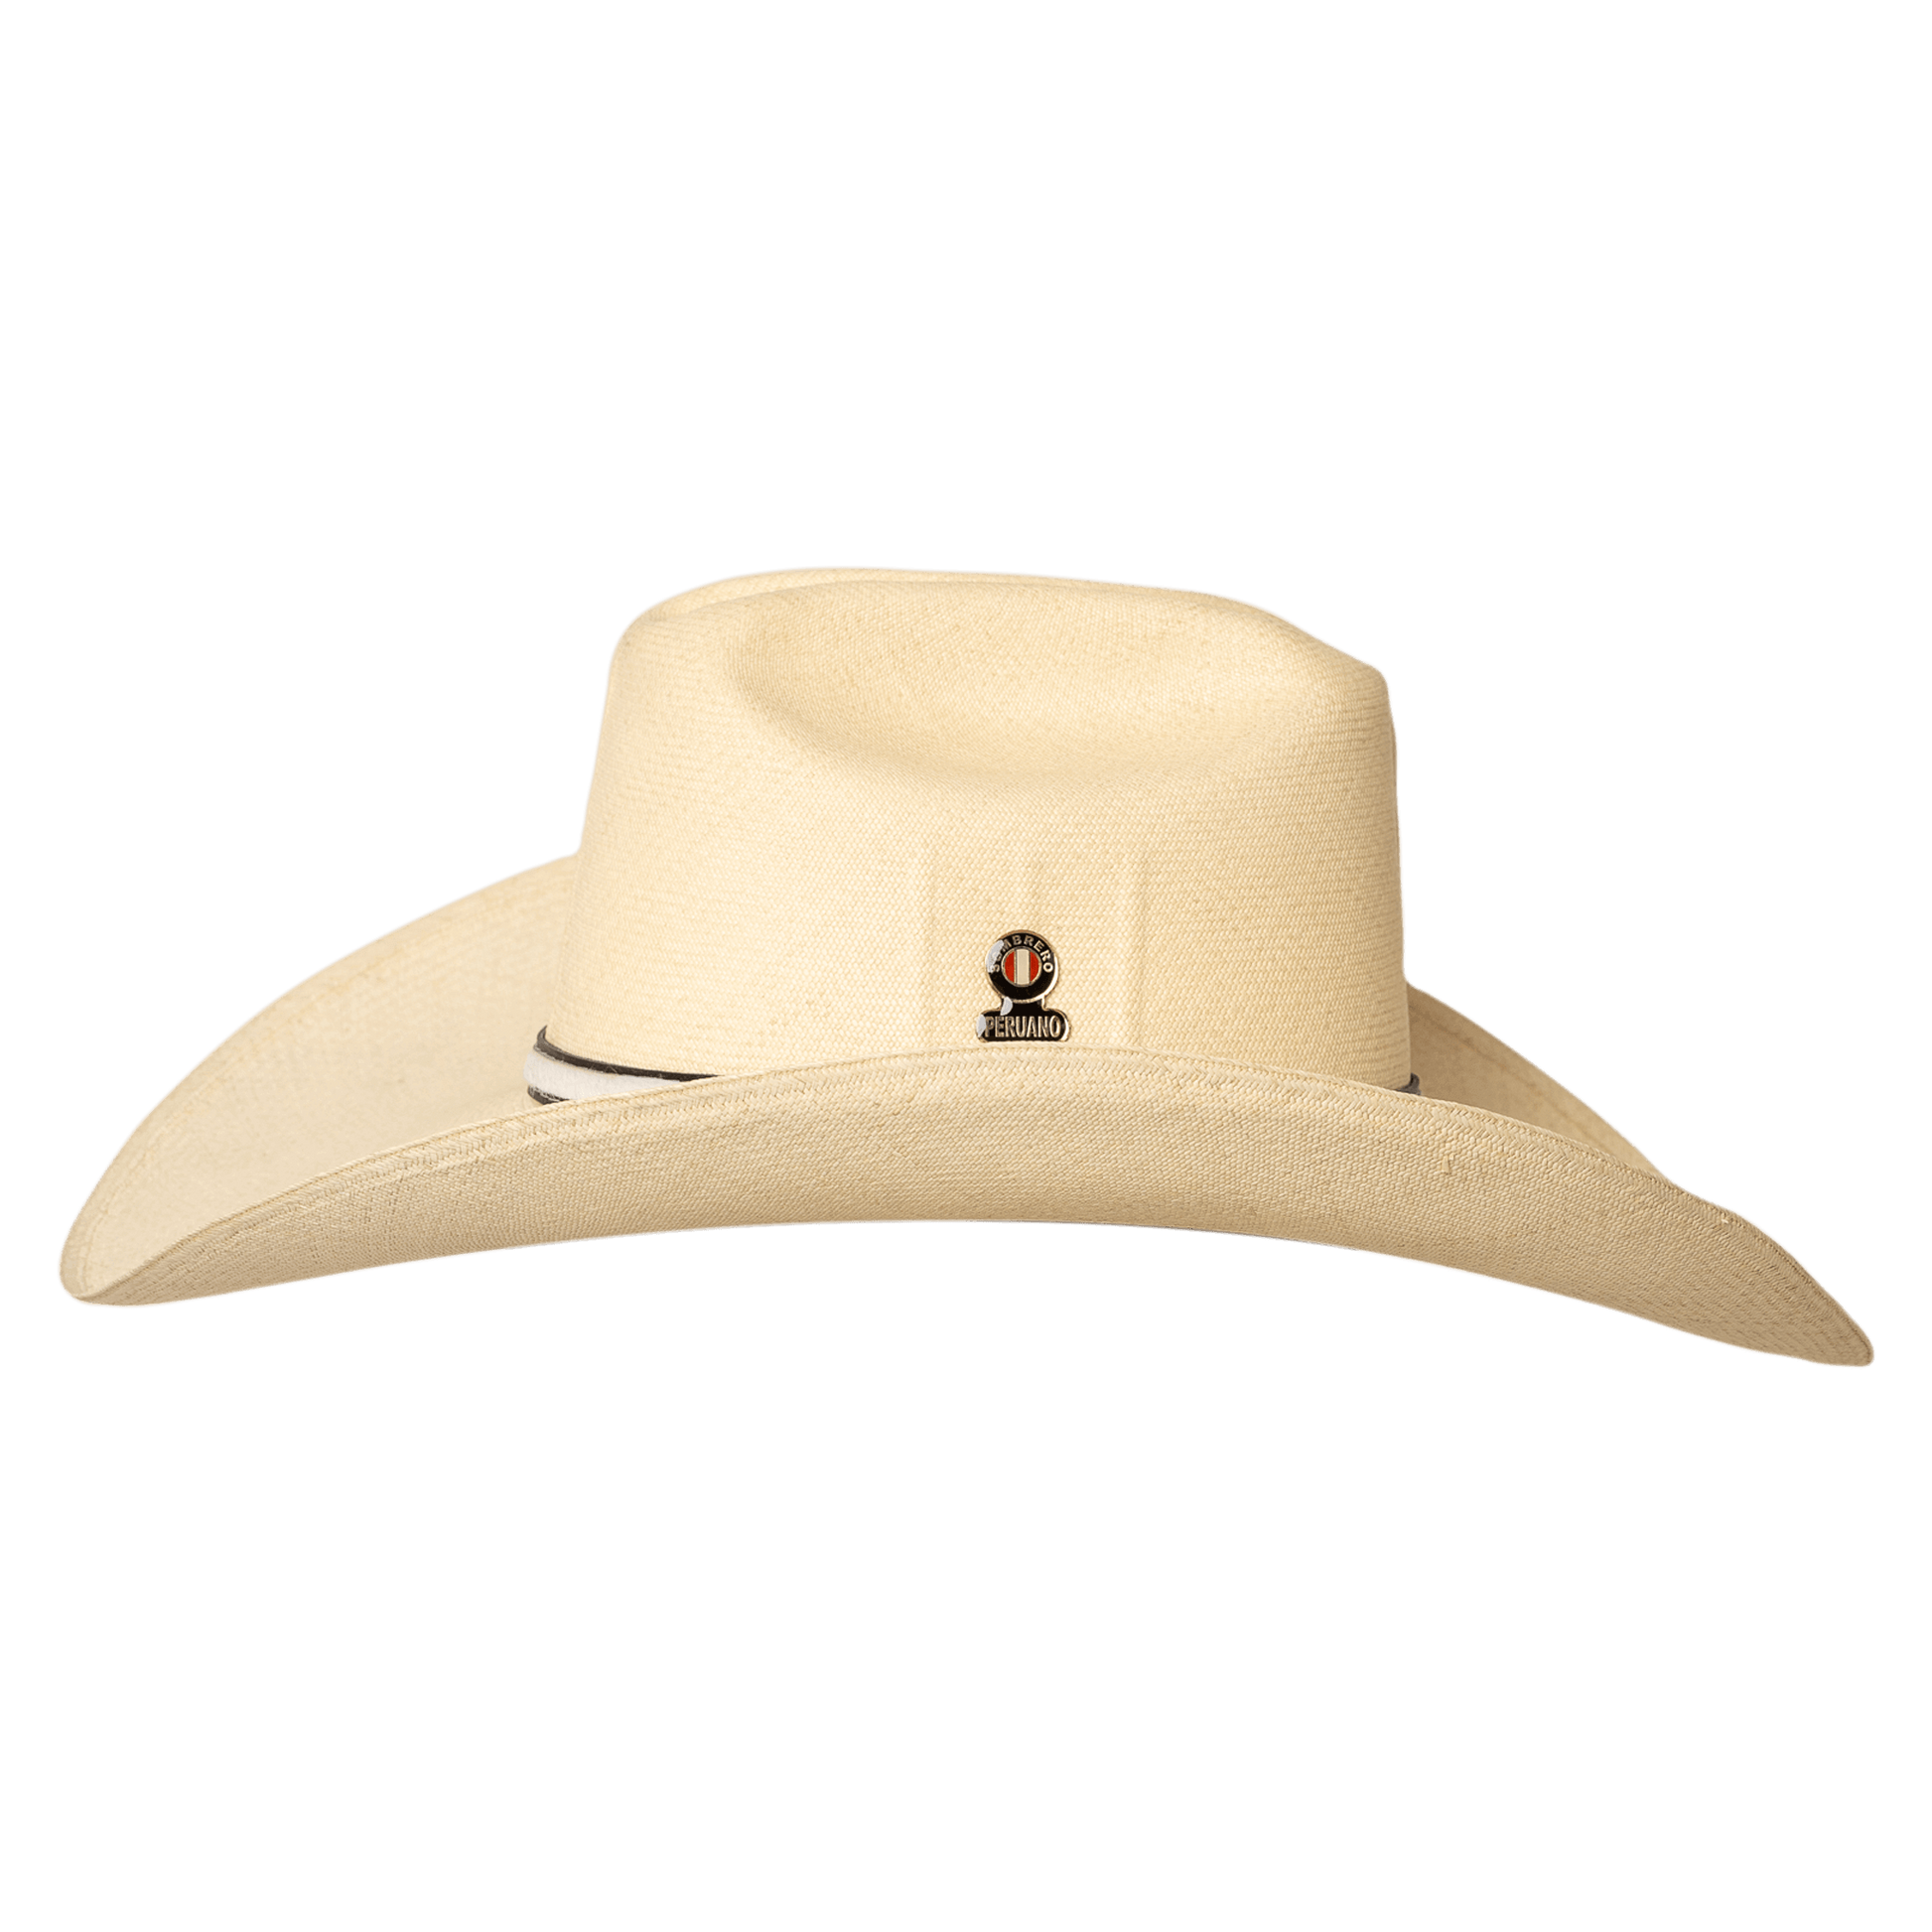 Sombrero-peruano-marlboro extrafino-vista-lateral